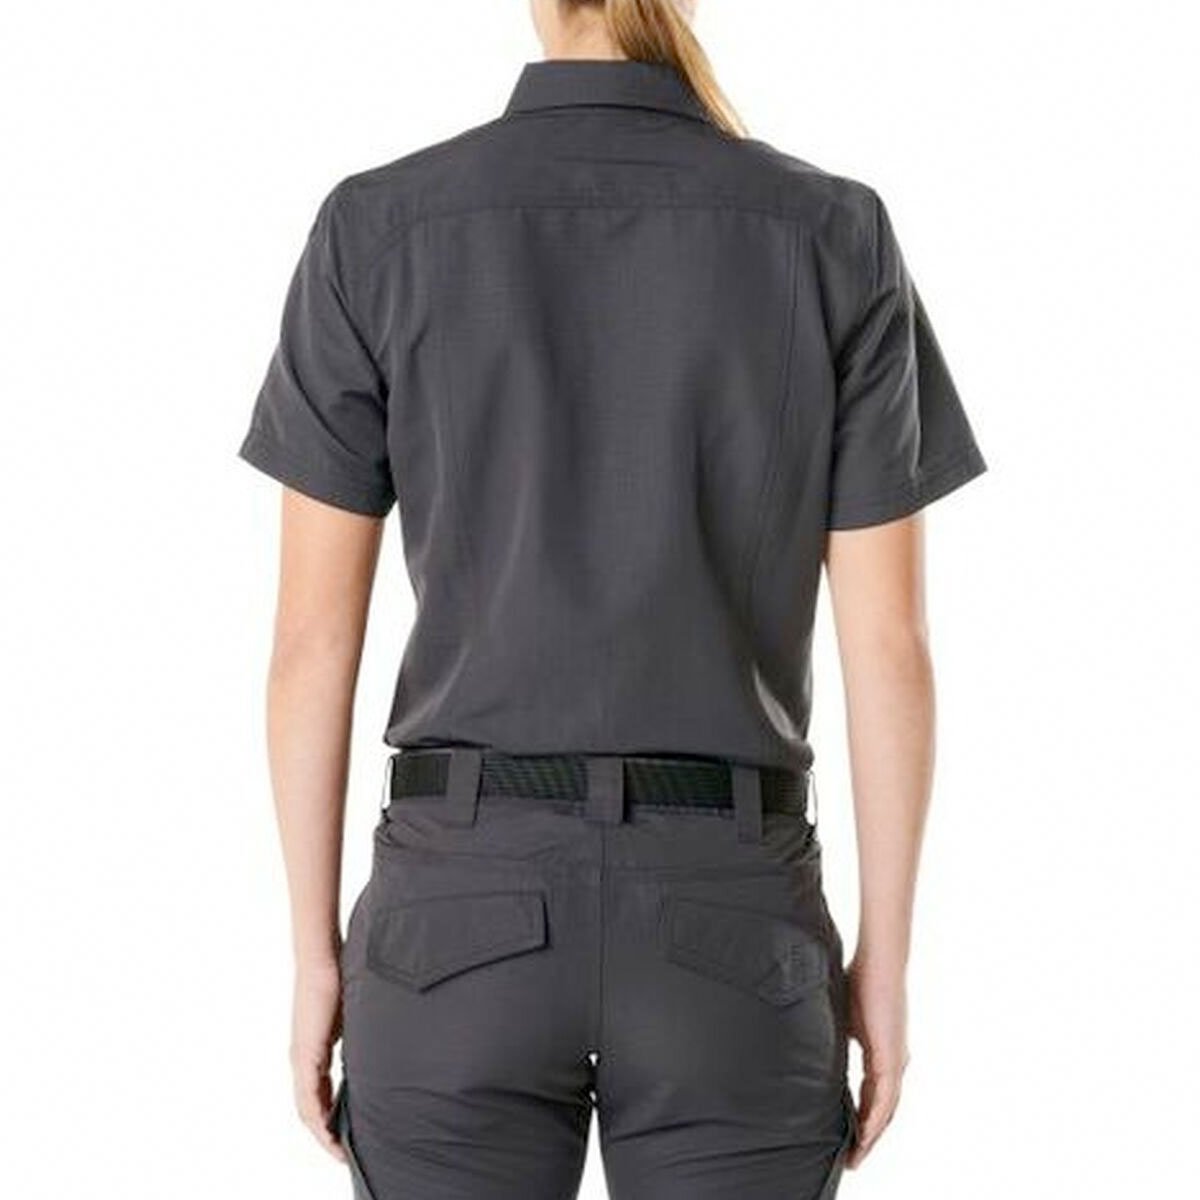 5.11 Tactical Womens Fast Tac Short Sleeve Shirt Shirts 5.11 Tactical Charcoal Medium Tactical Gear Supplier Tactical Distributors Australia